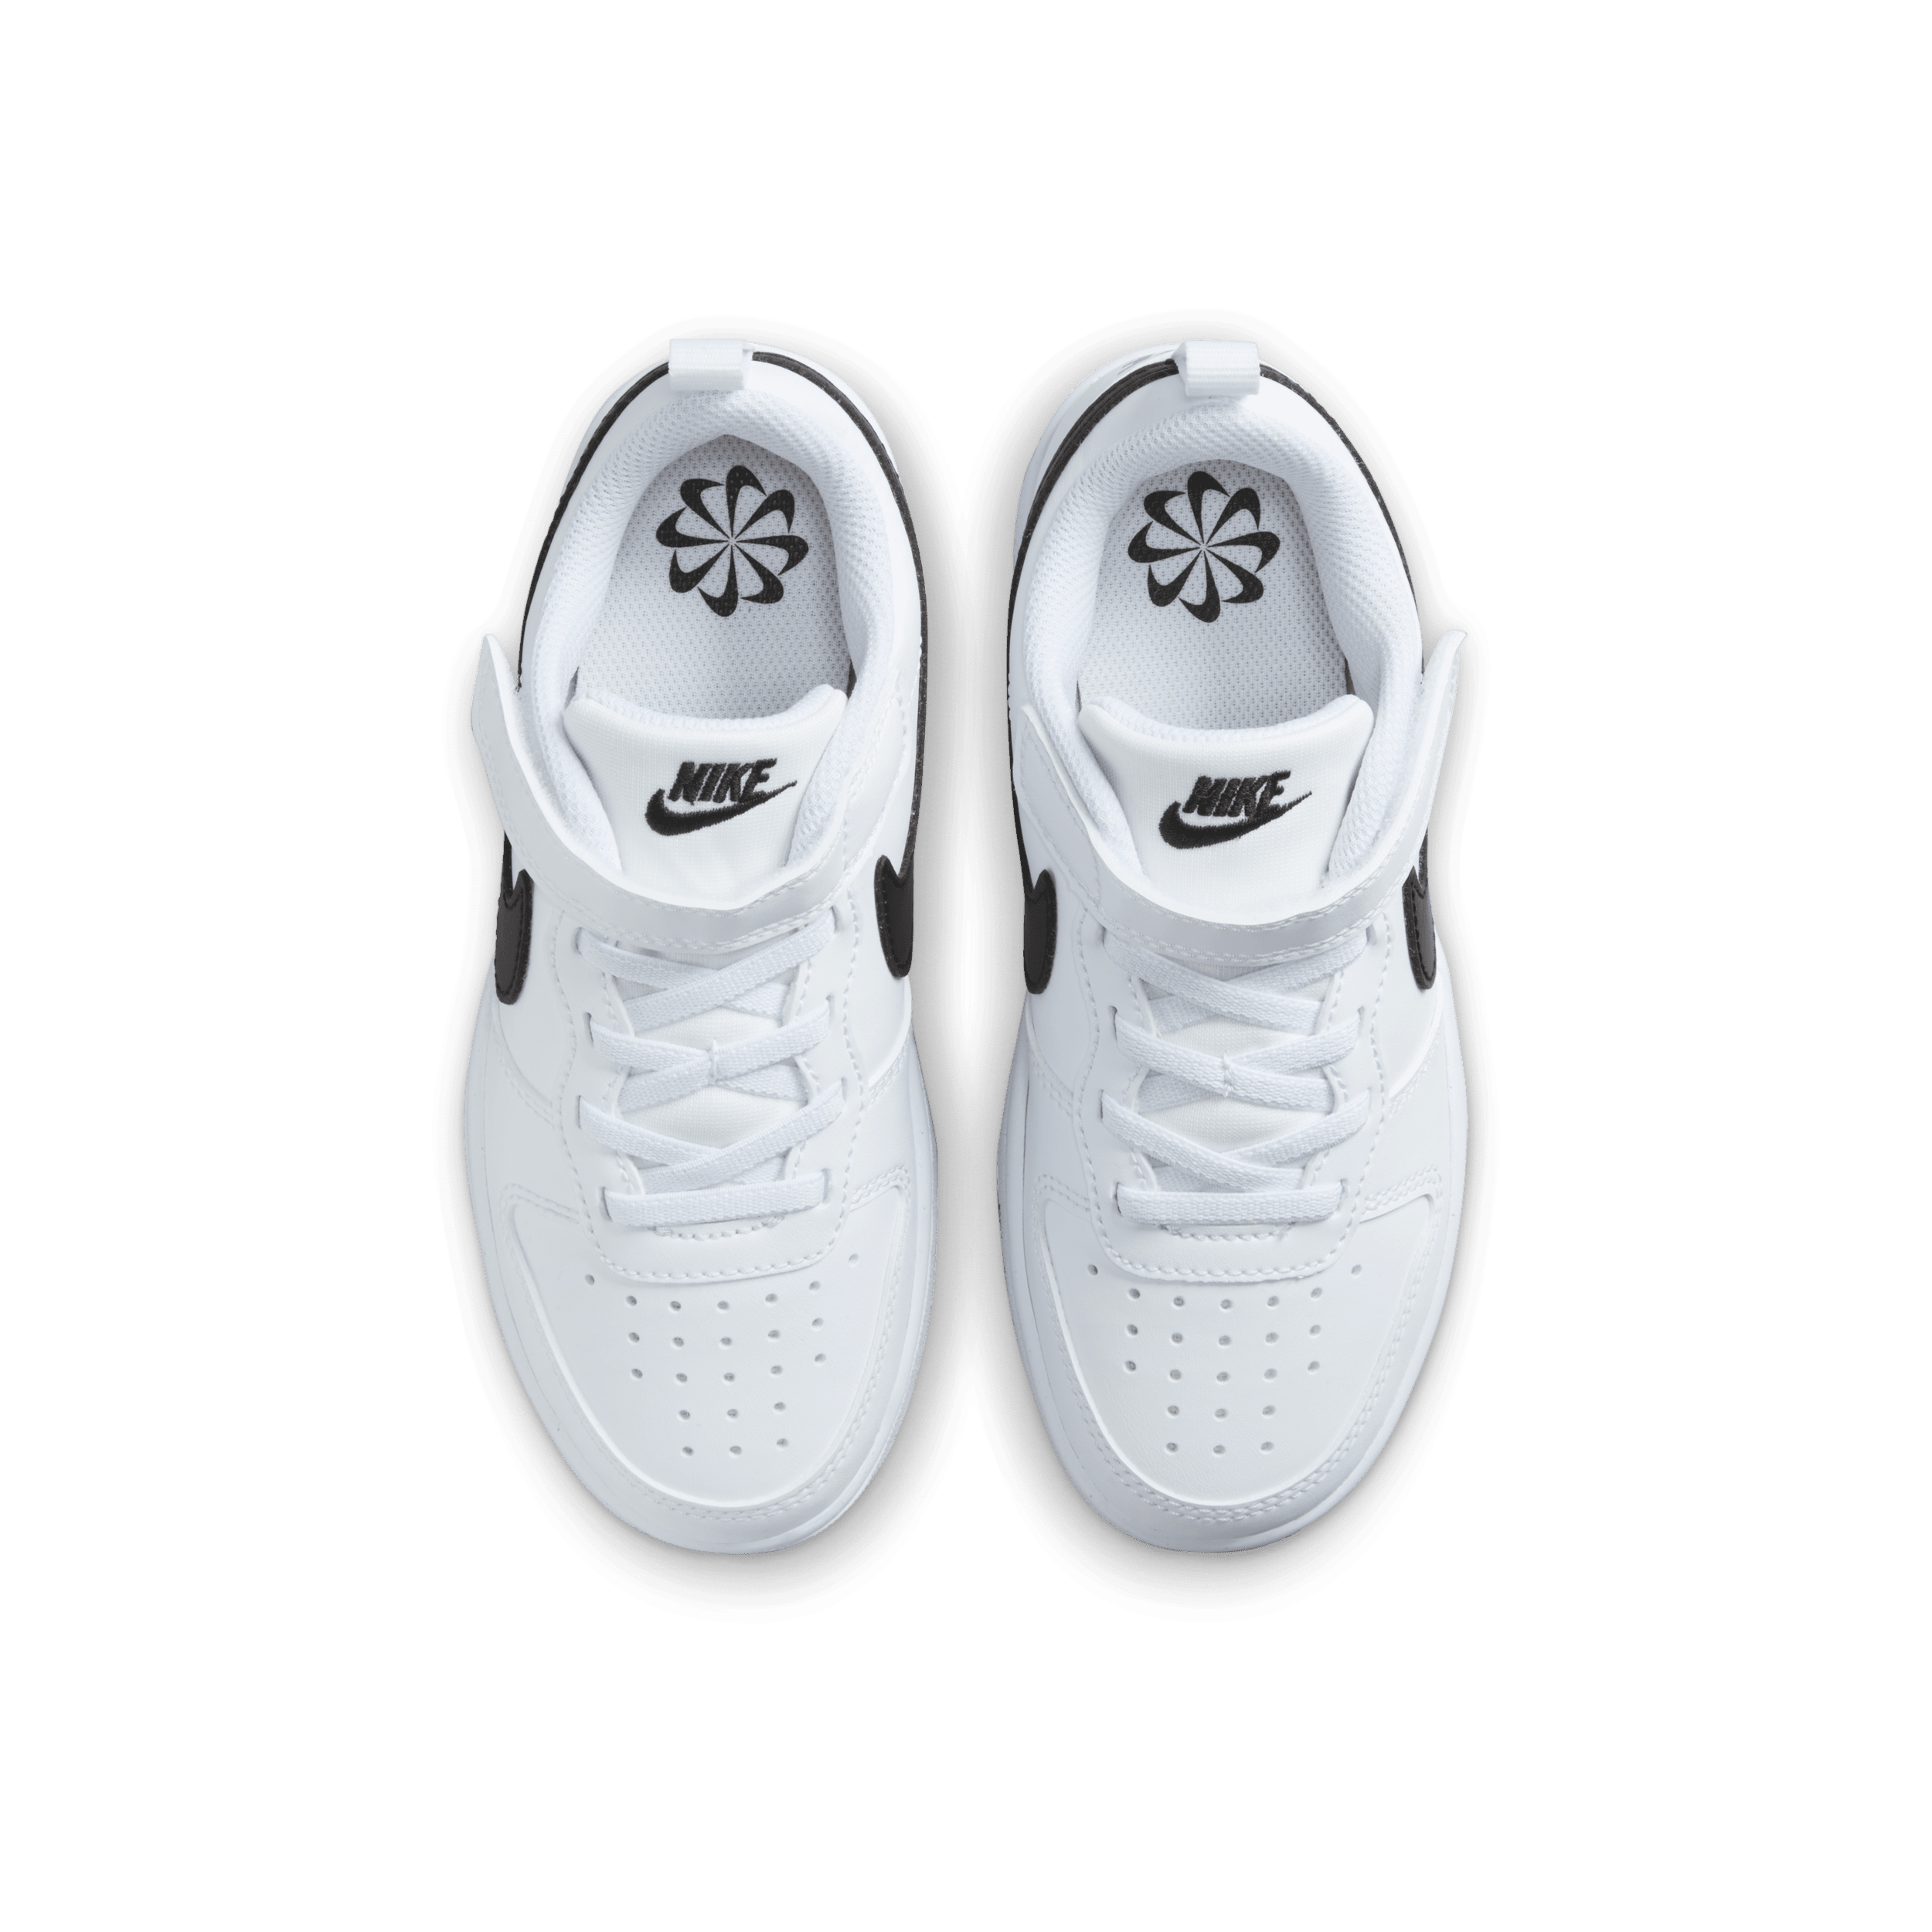 Bild von Court Borough Low Recraft (PS) Sneaker White/Black, 29 1⁄2